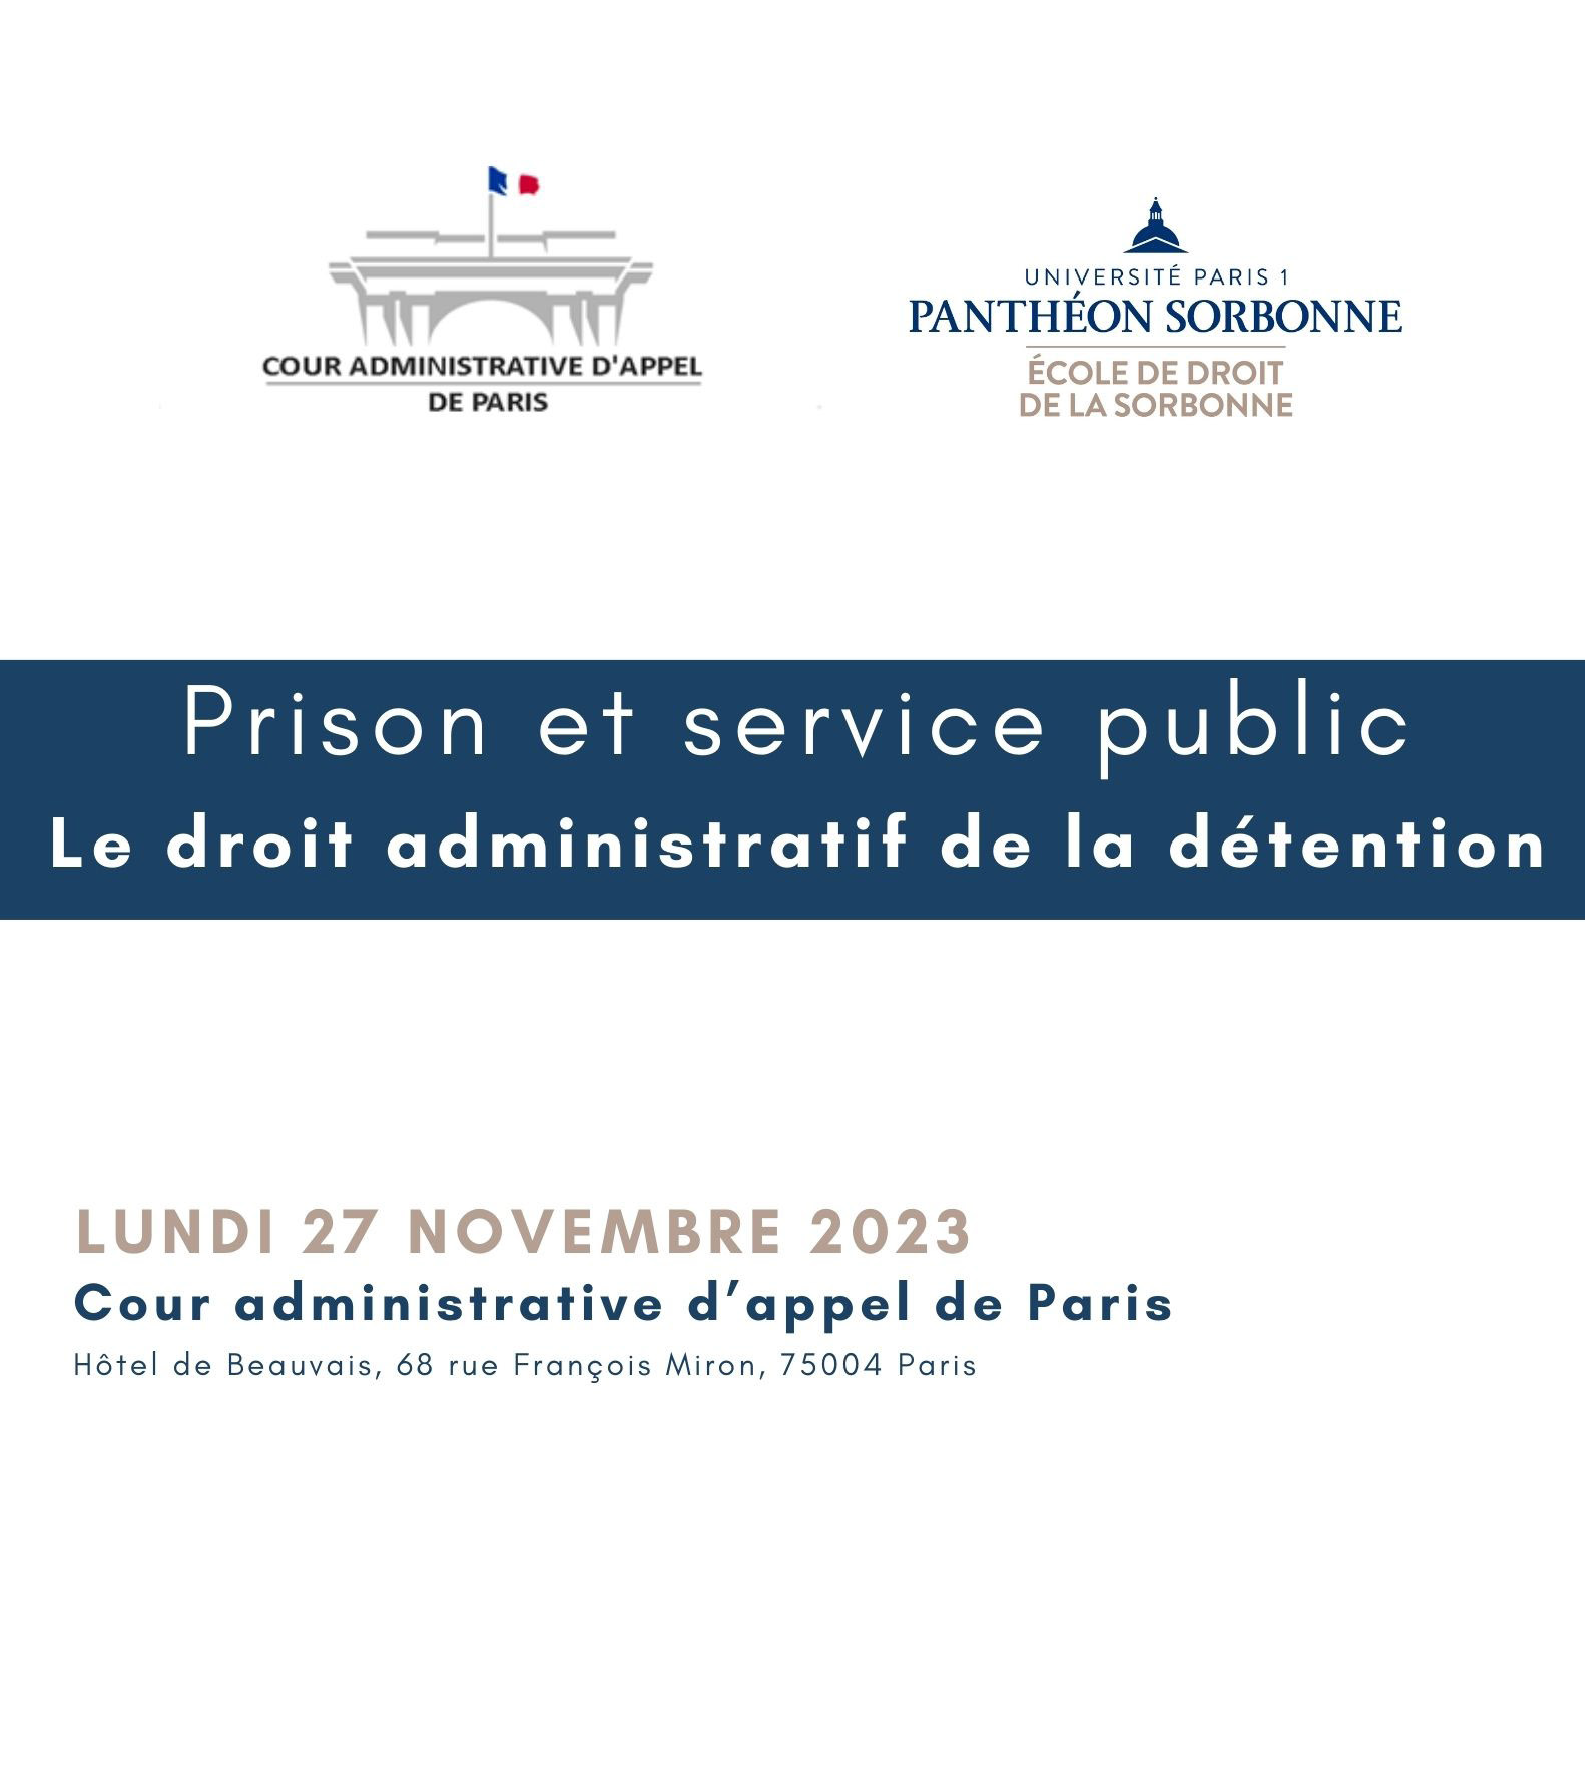 "https://evento.univ-paris1.fr/survey/journee-d-etudes-sur-le-theme-prison-et-service-public-le-droit-administratif-de-la-detention"